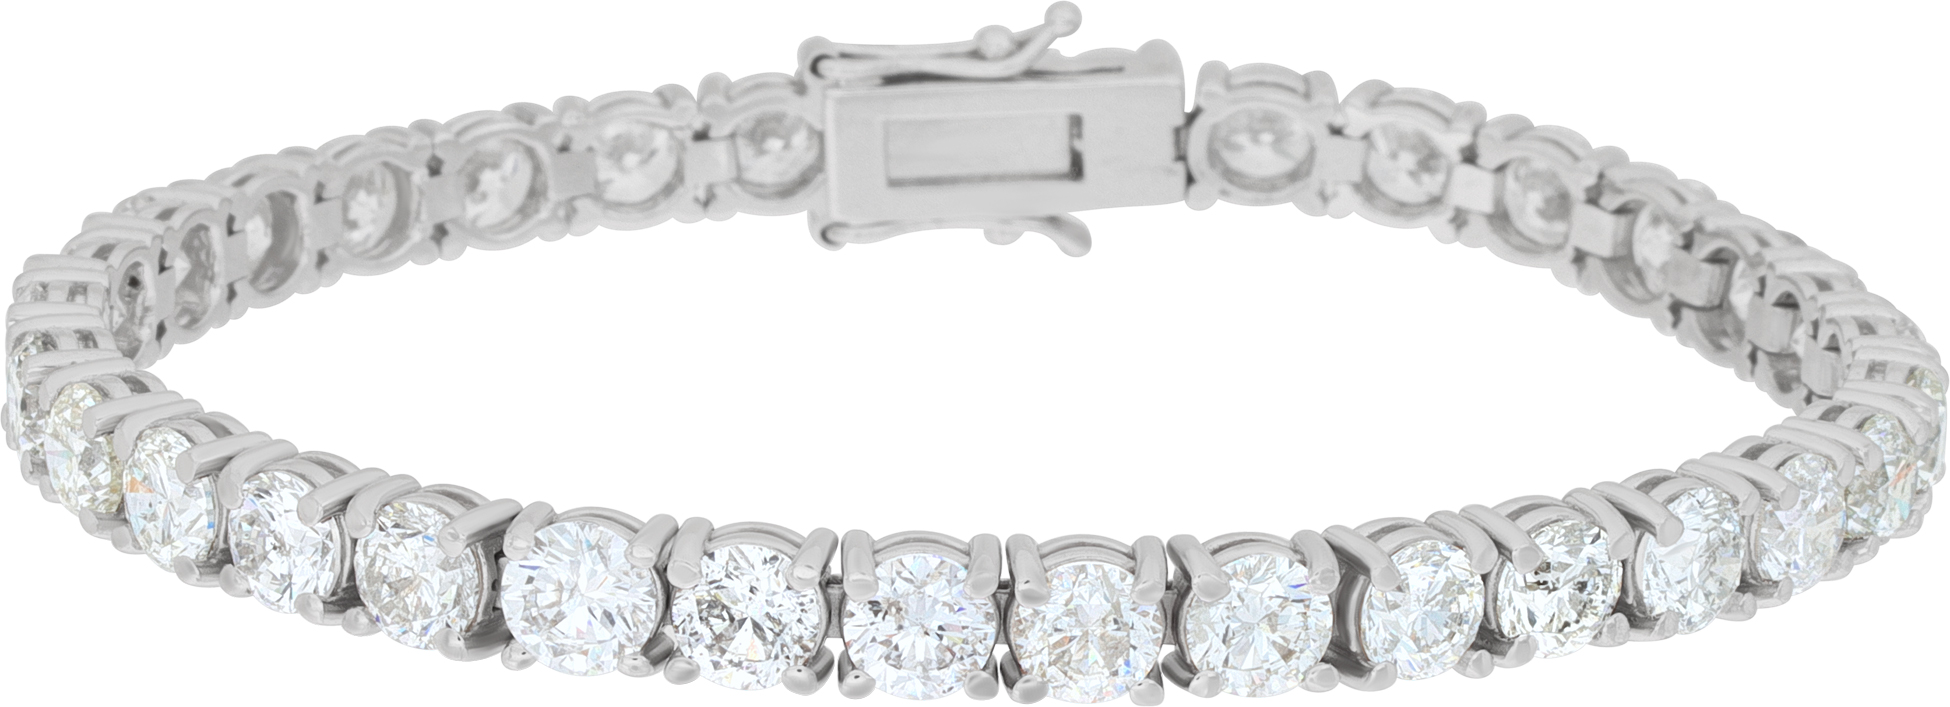 Diamond line bracelet in 14k white gold